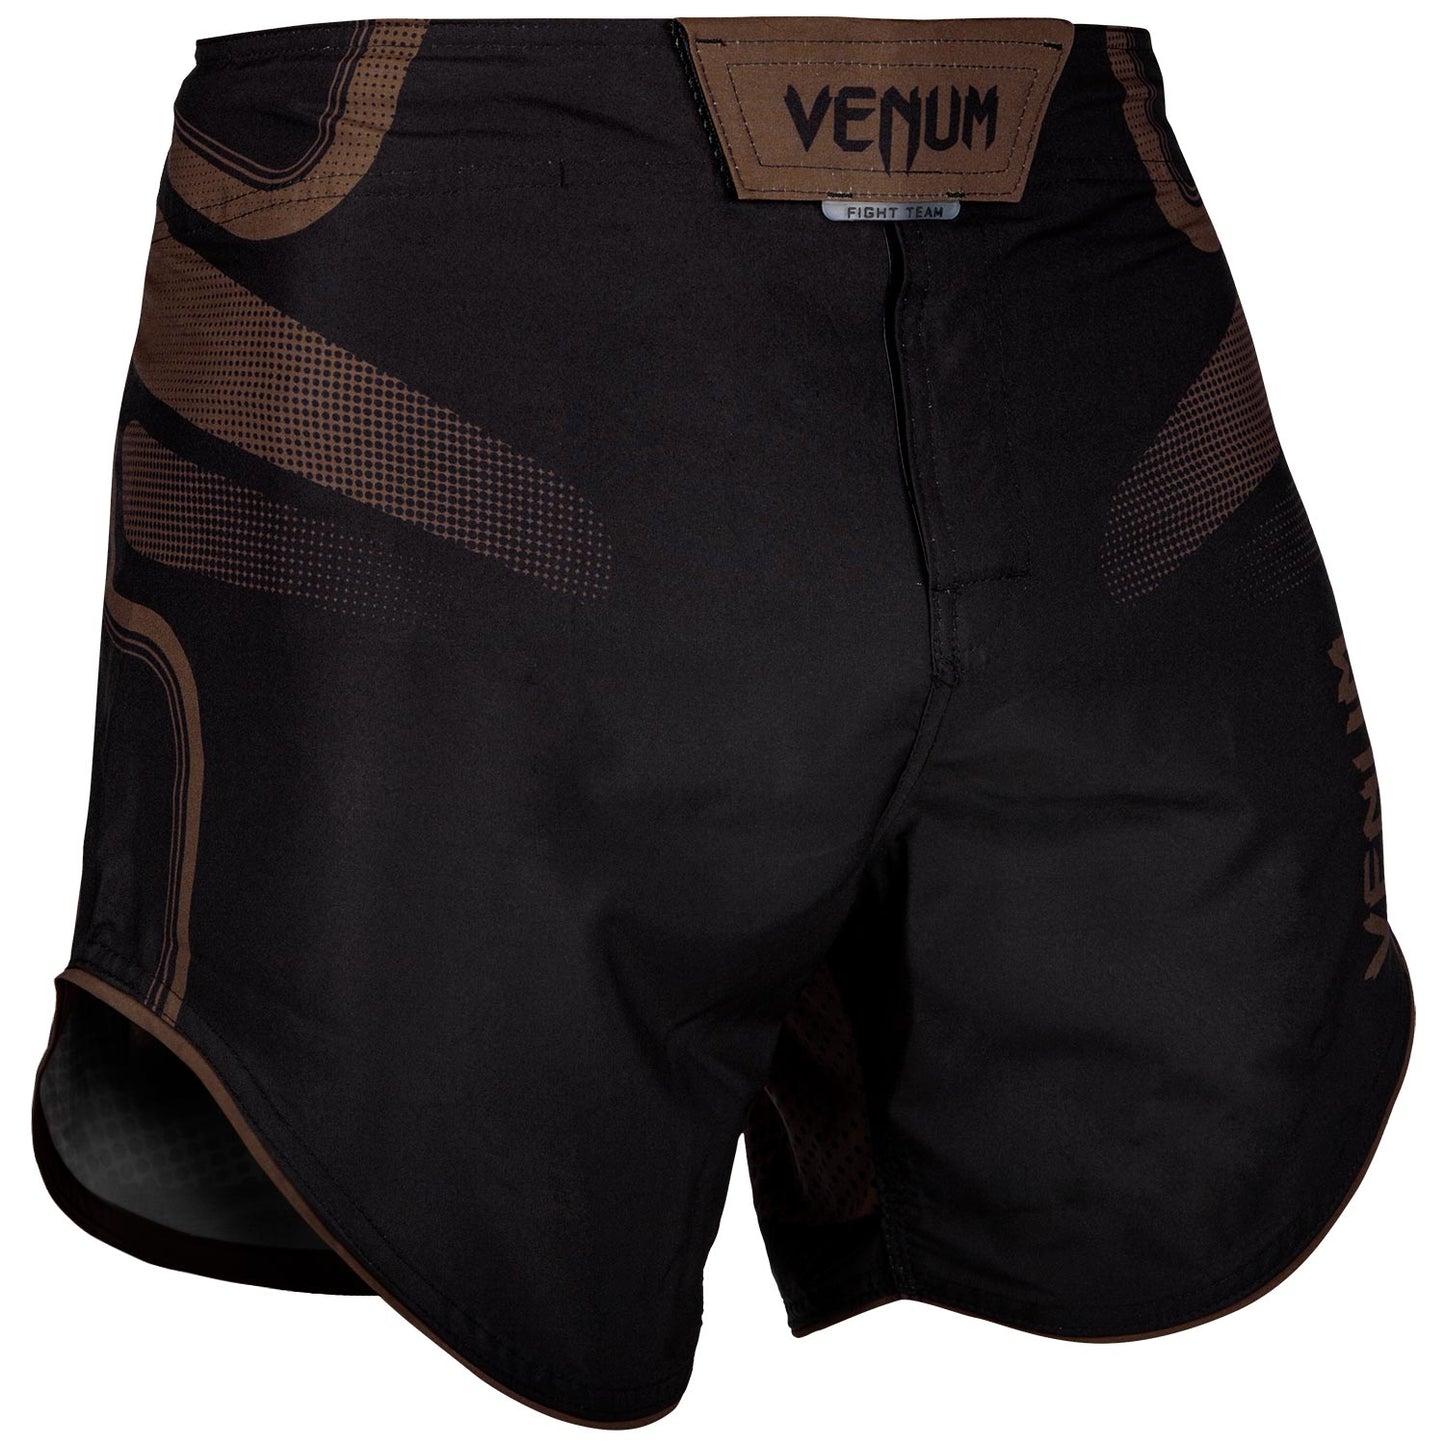 Pantalones MMA Venum Tempest 2.0 - Negro/Marrón